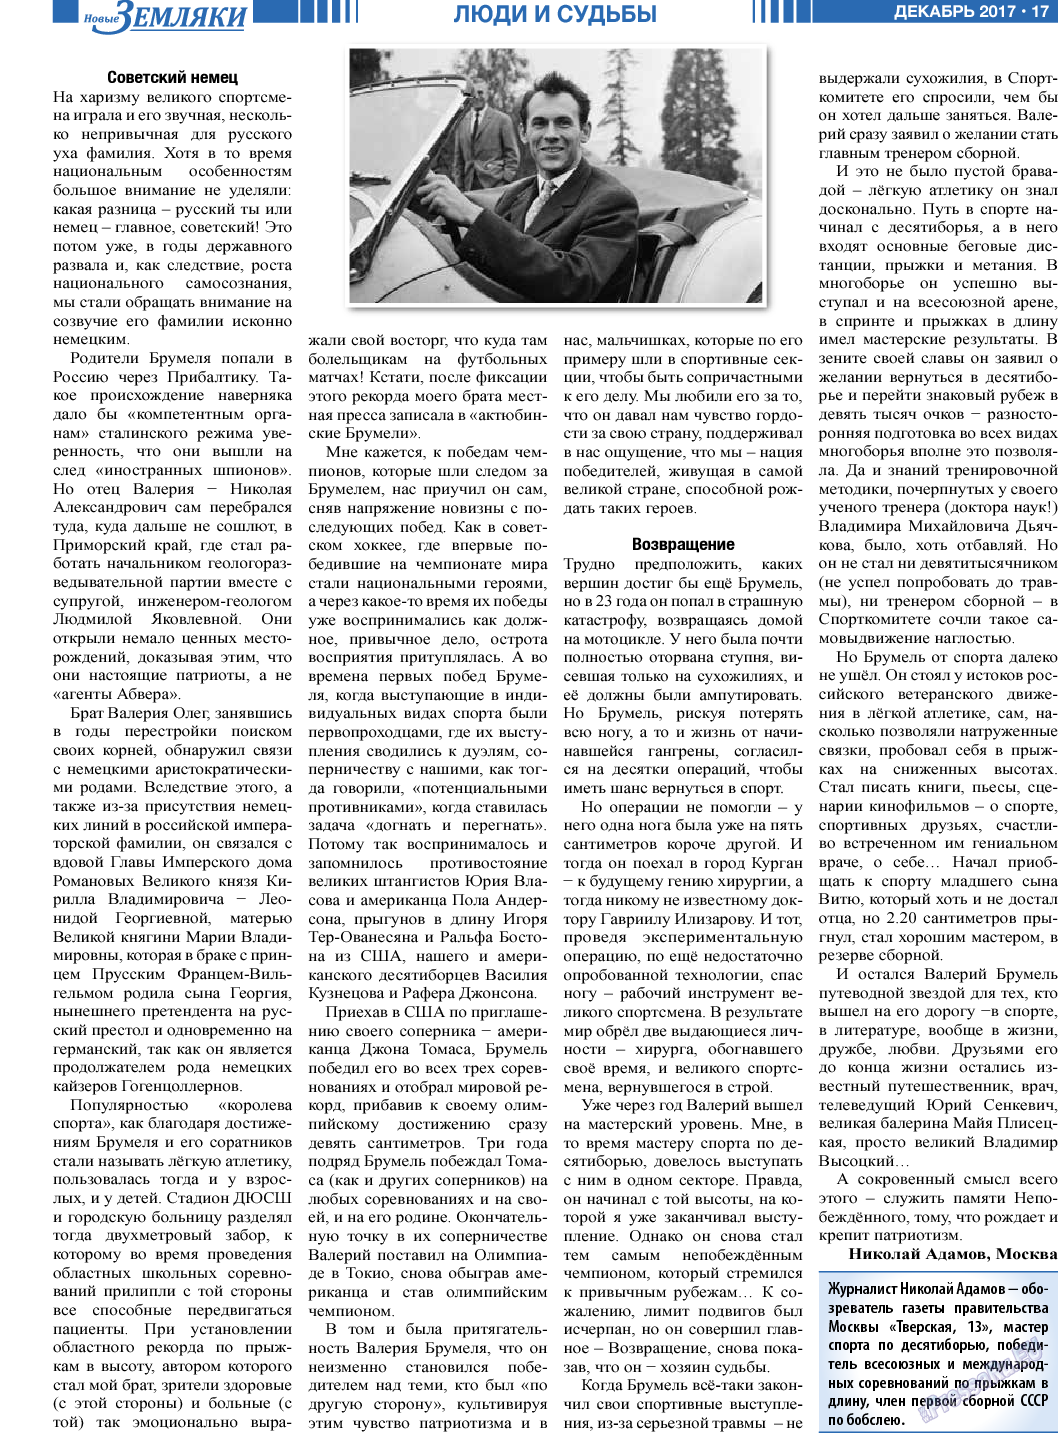 Новые Земляки, газета. 2017 №12 стр.17